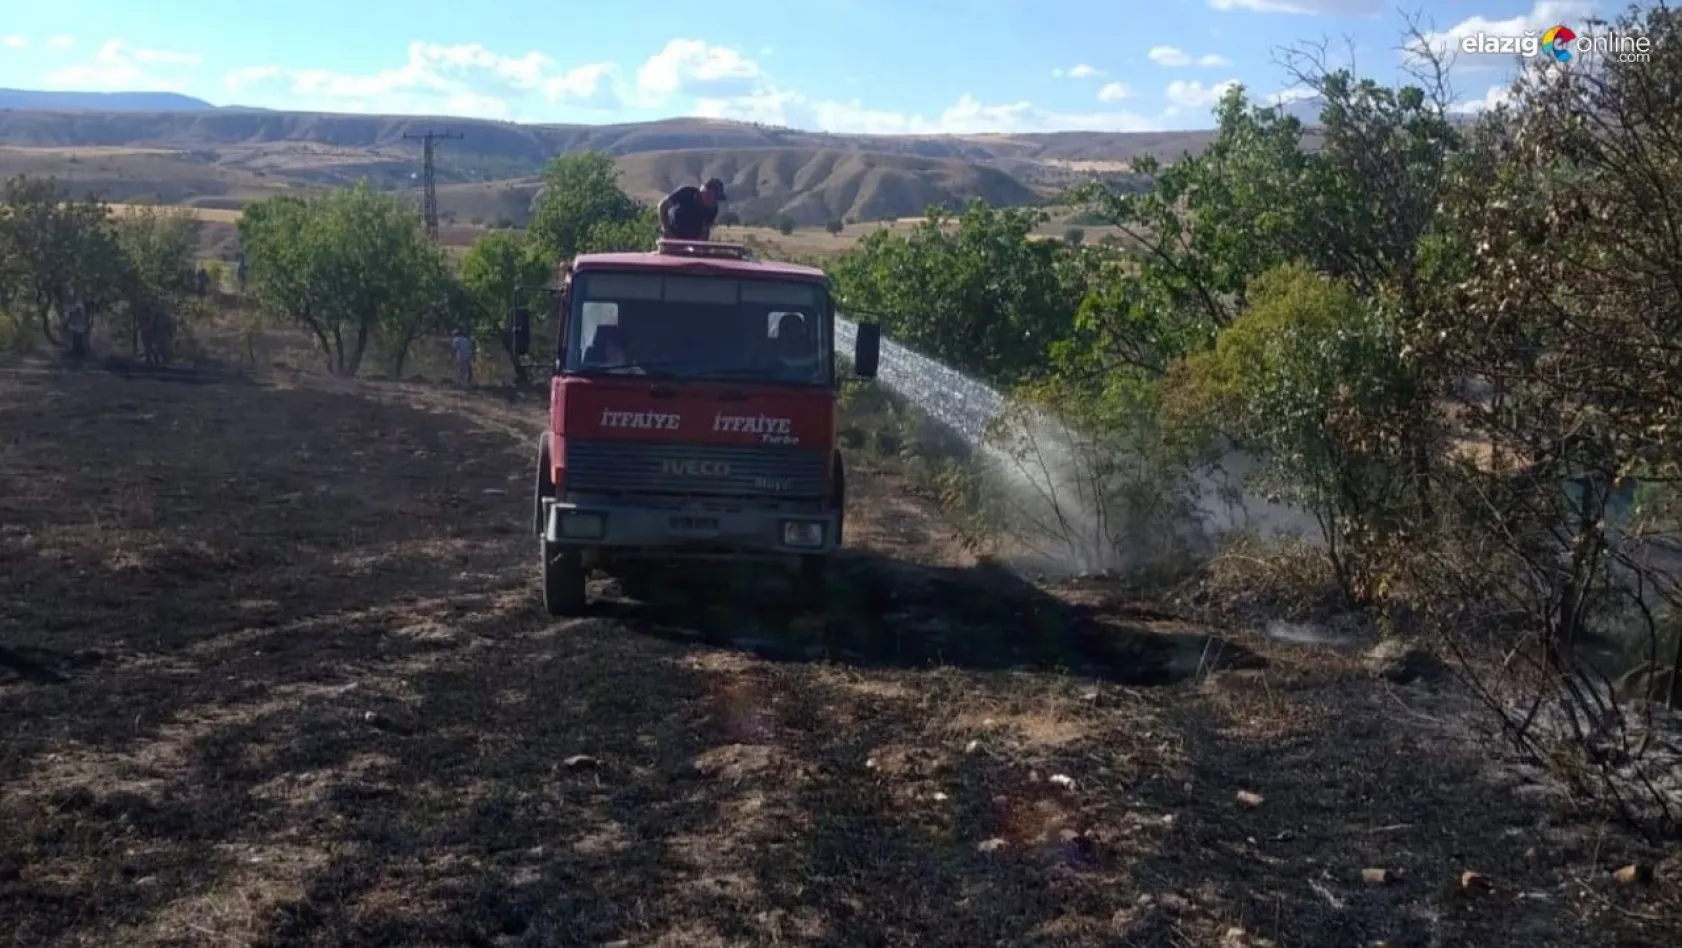 Tunceli'de arazi yangını